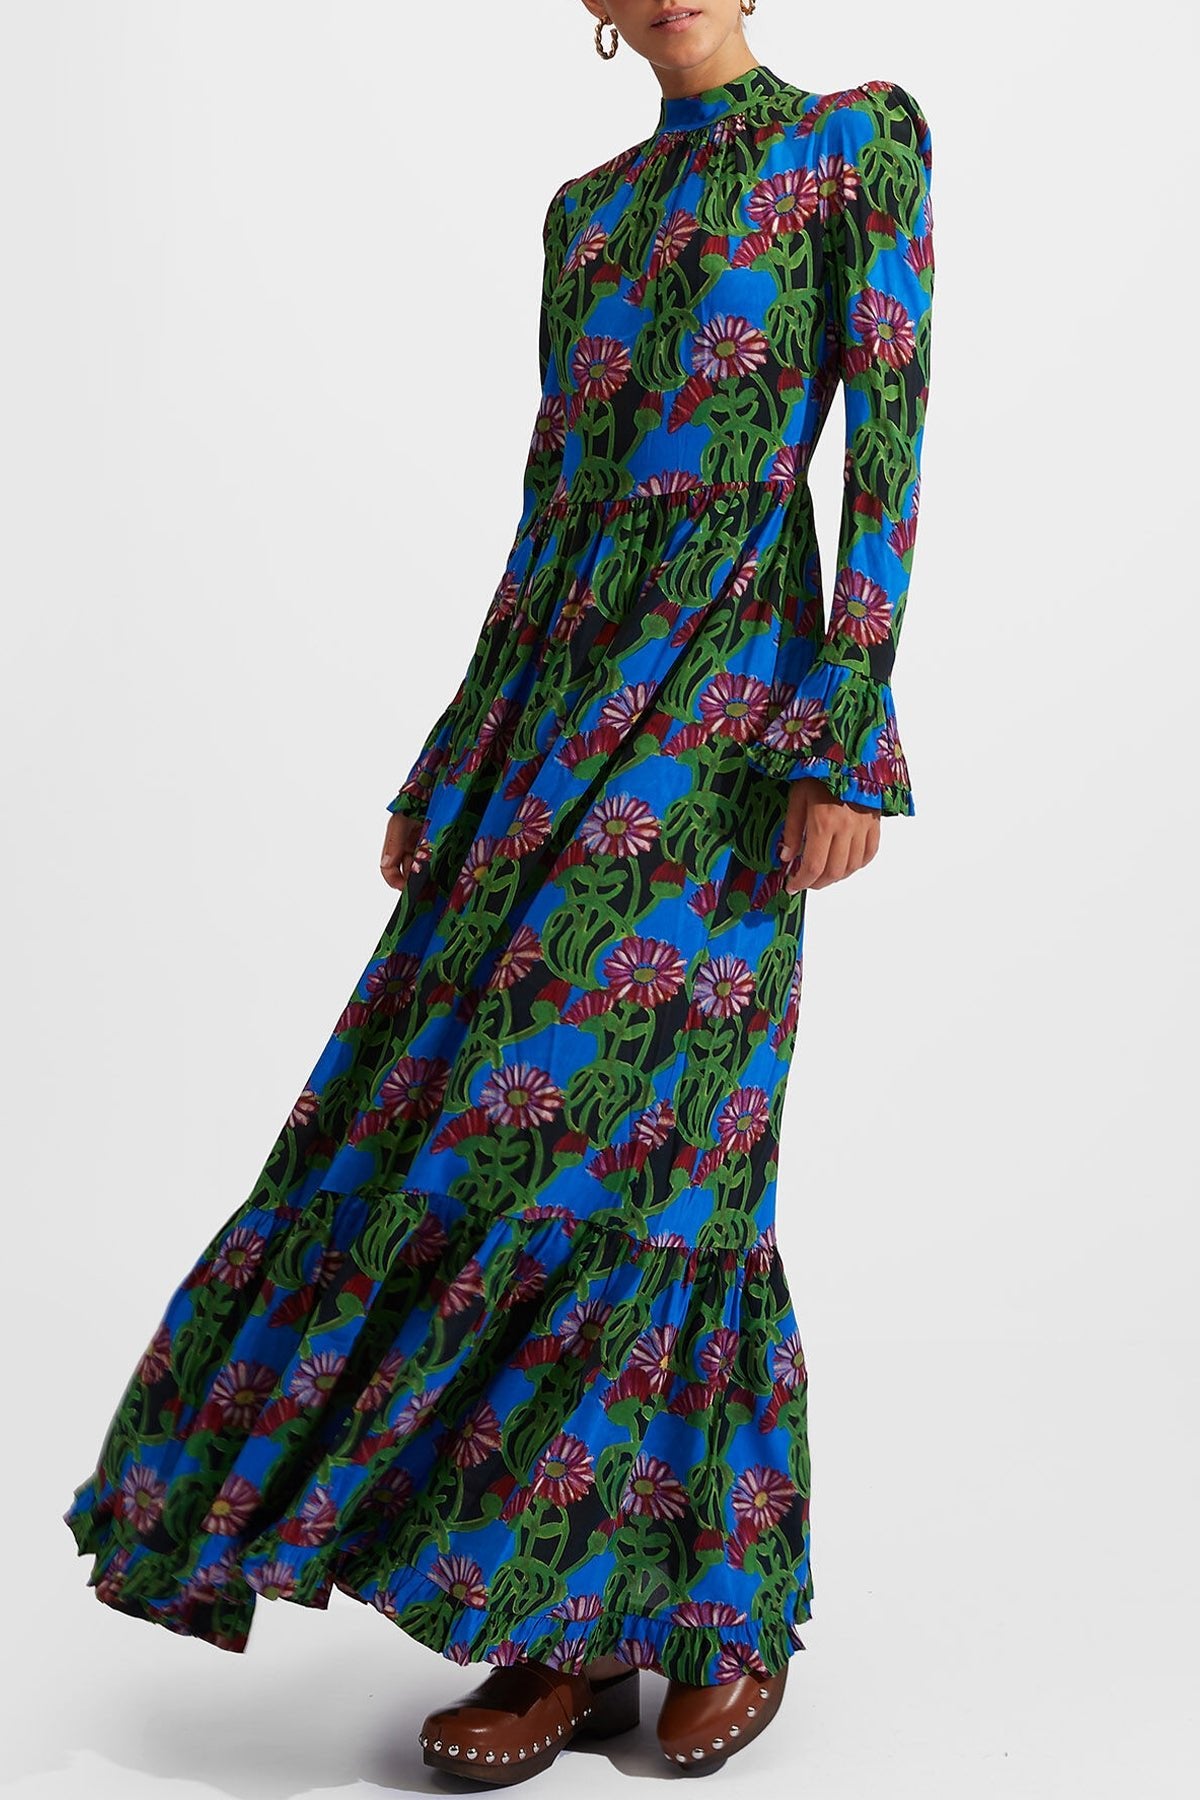 Visconti Dress in Gerber - shop-olivia.com